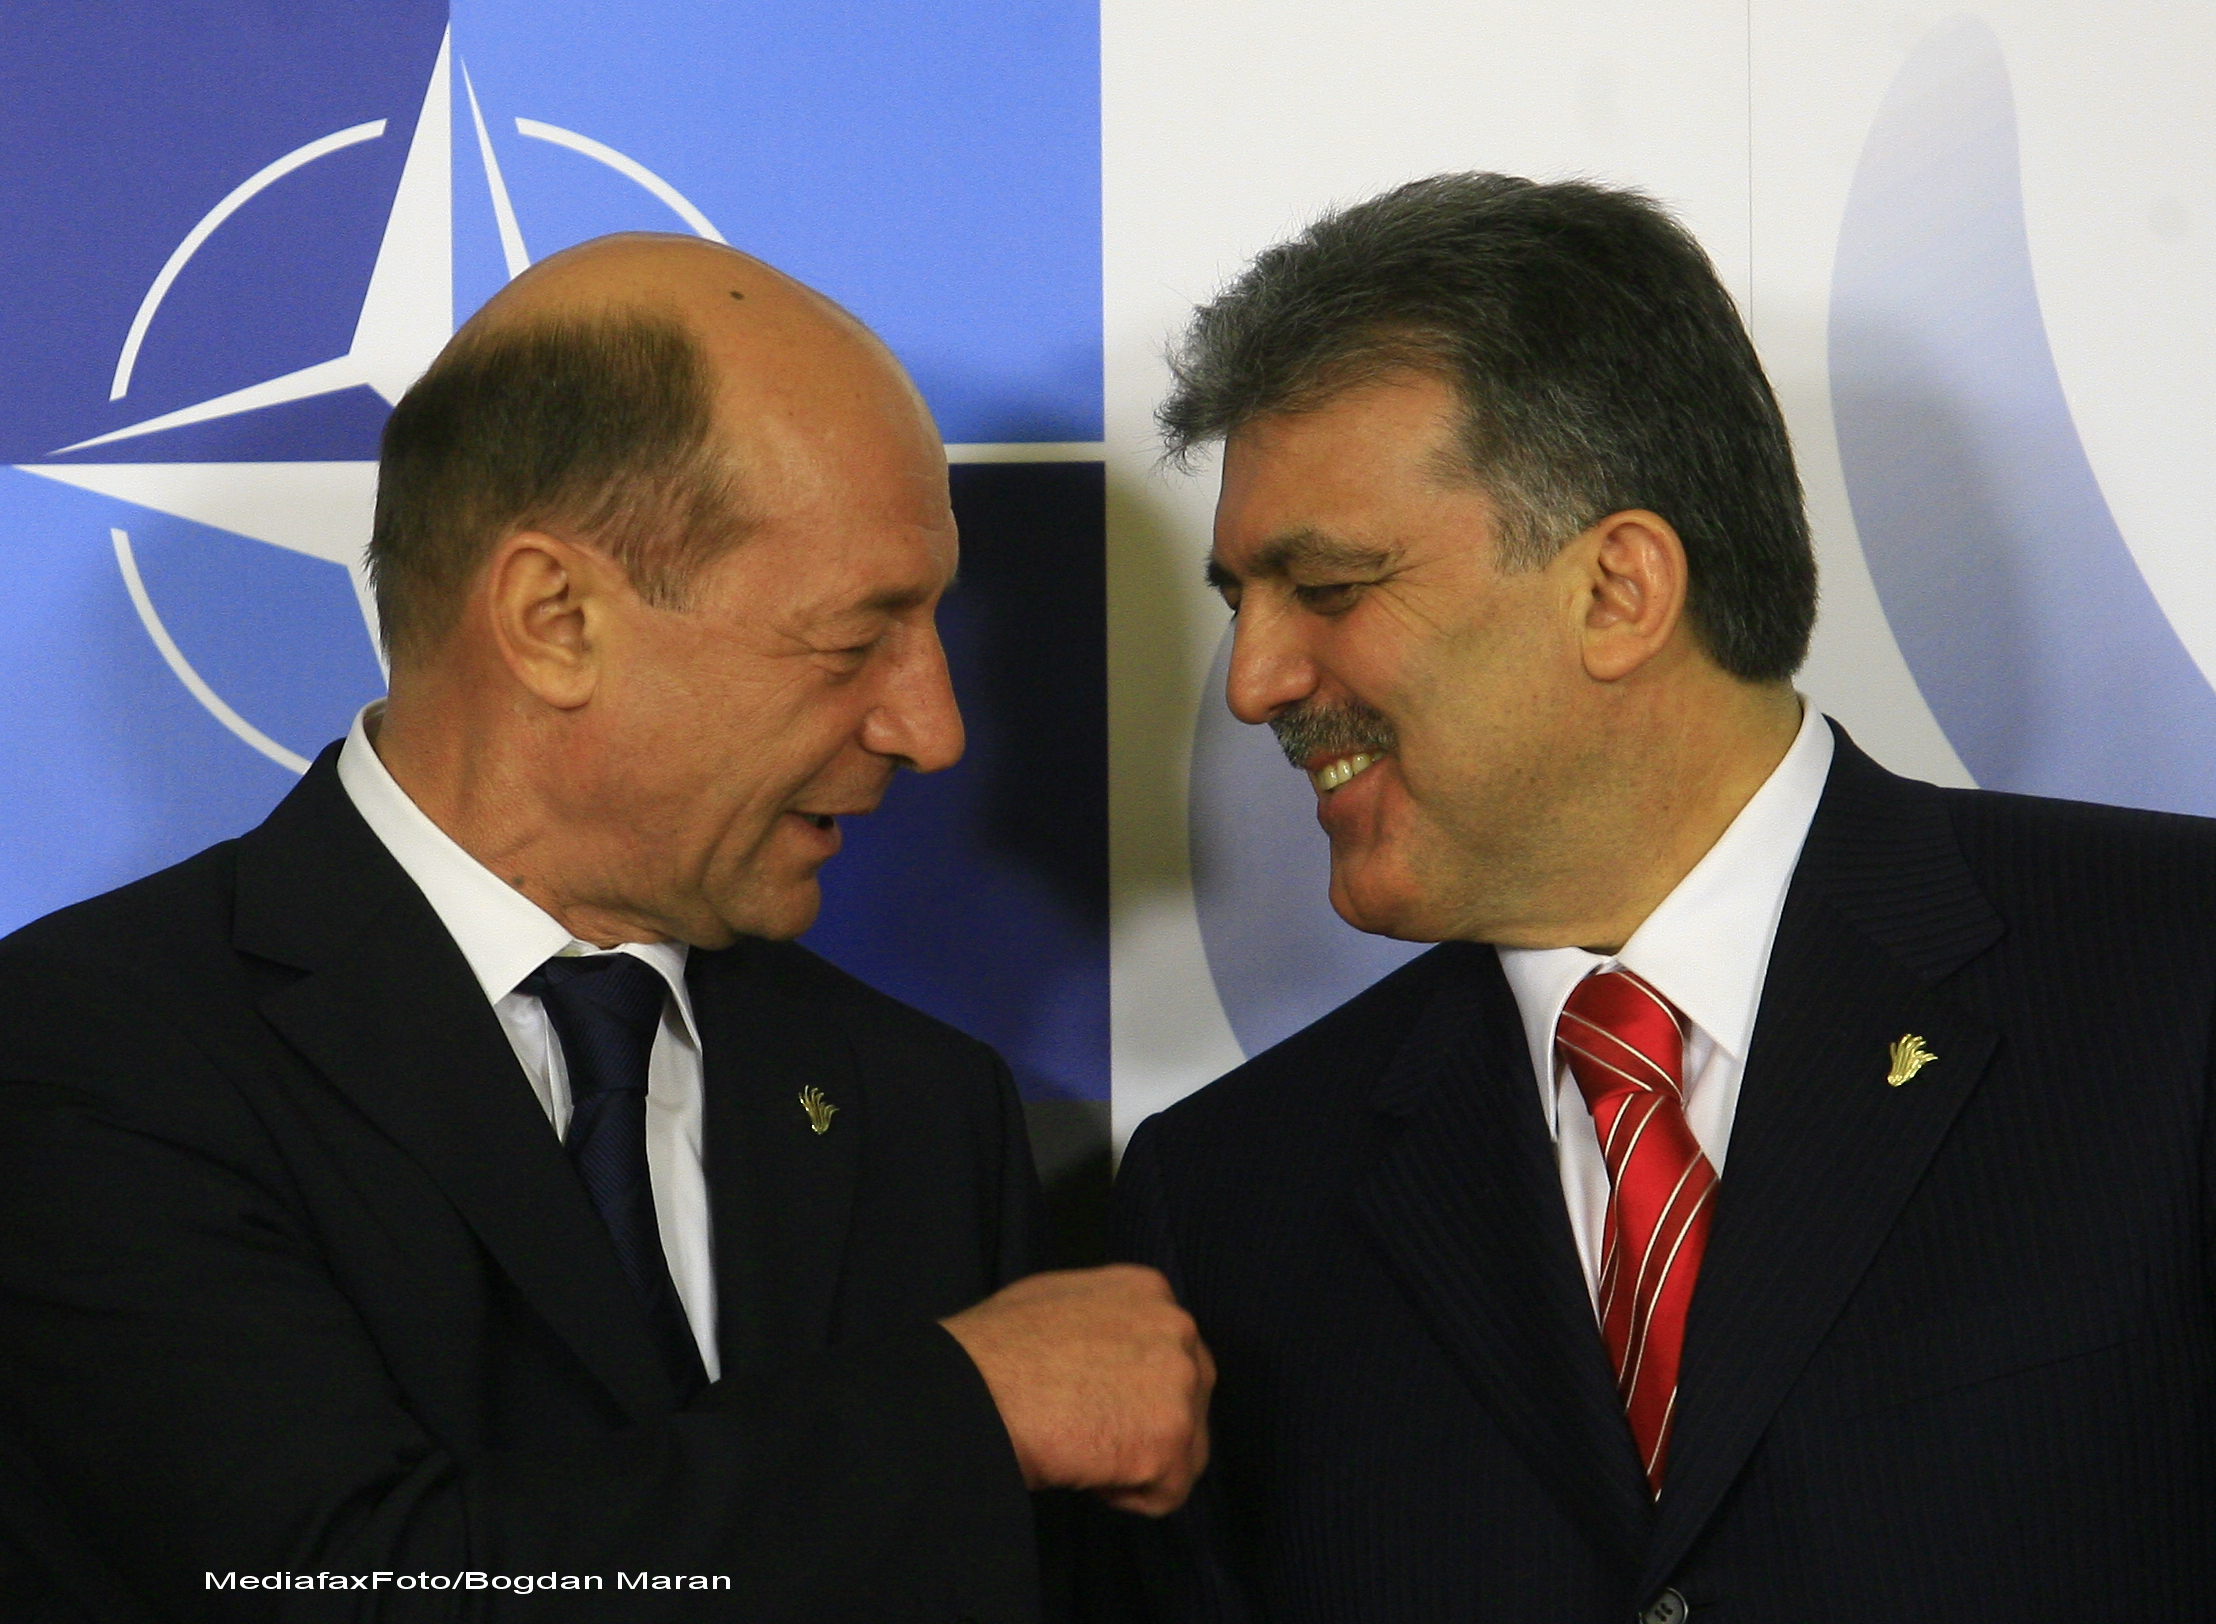 Presedintele Traian Basescu a plecat in Turcia, unde va semna o Declaratie de parteneriat strategic